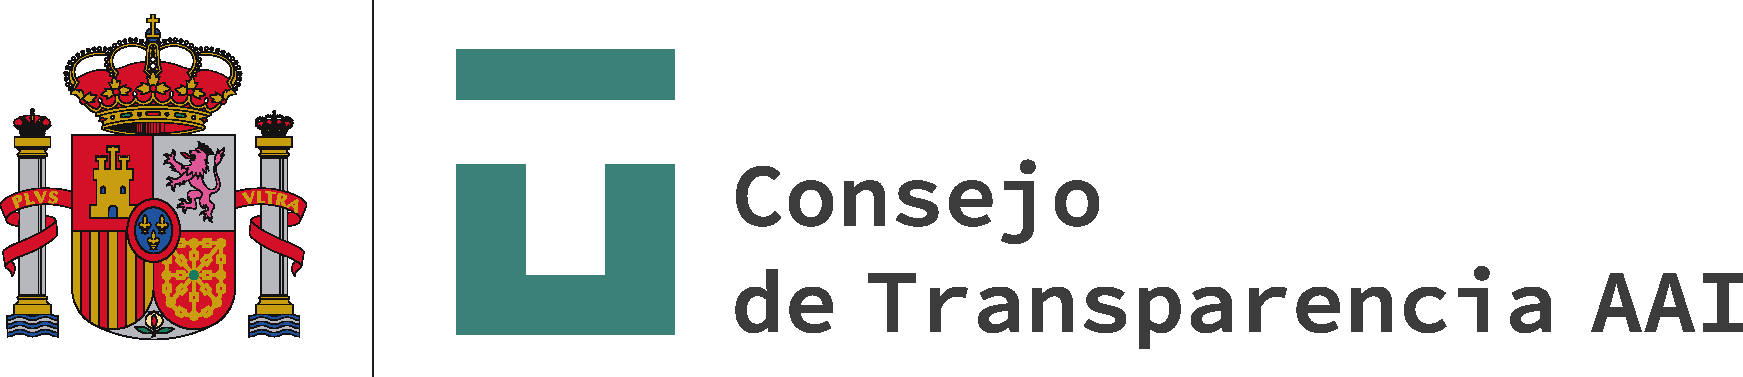 Logo Consejo de Transparencia y Buen Gobierno